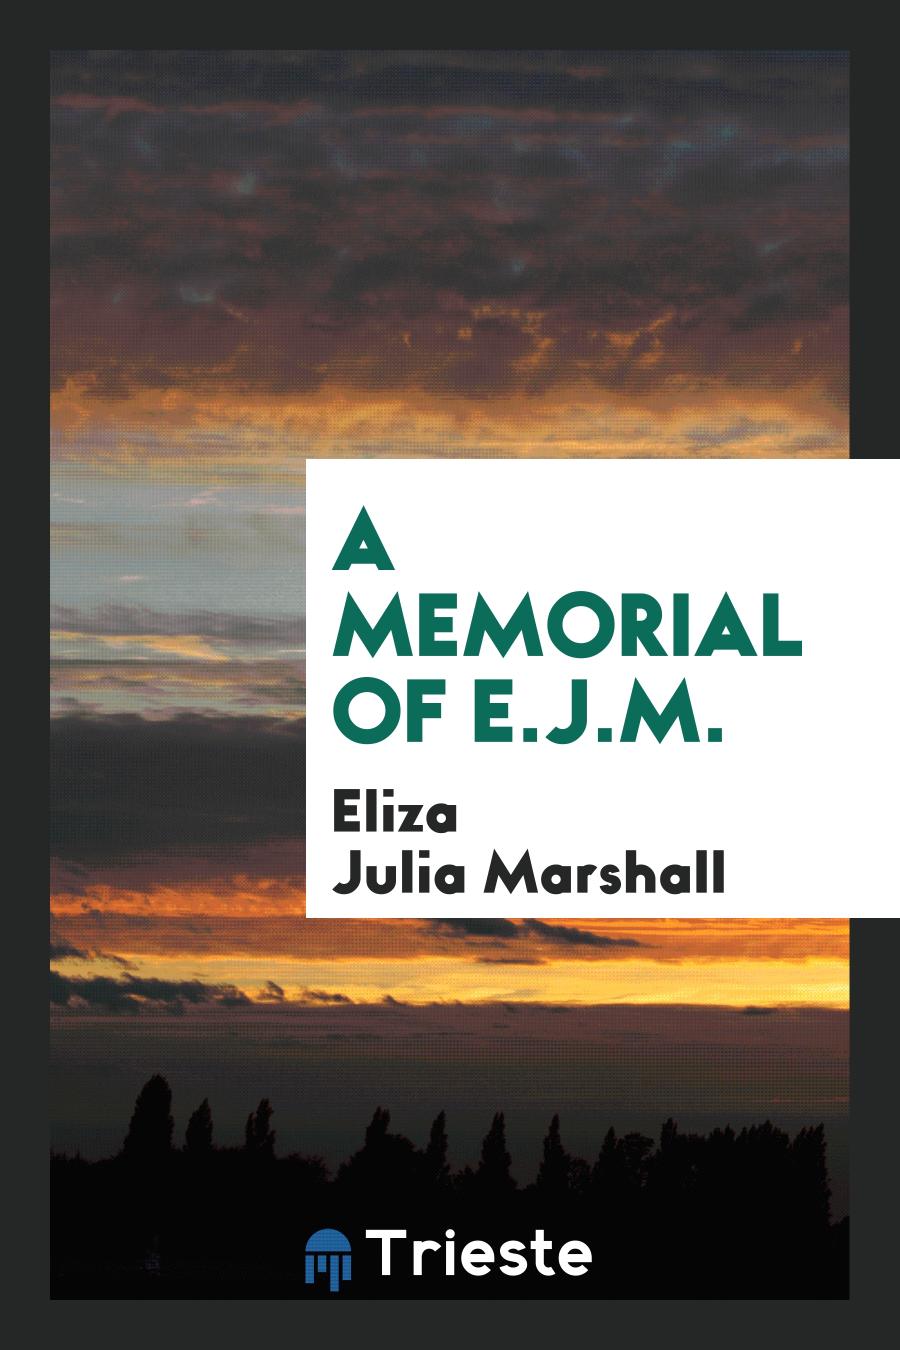 A memorial of E.J.M.